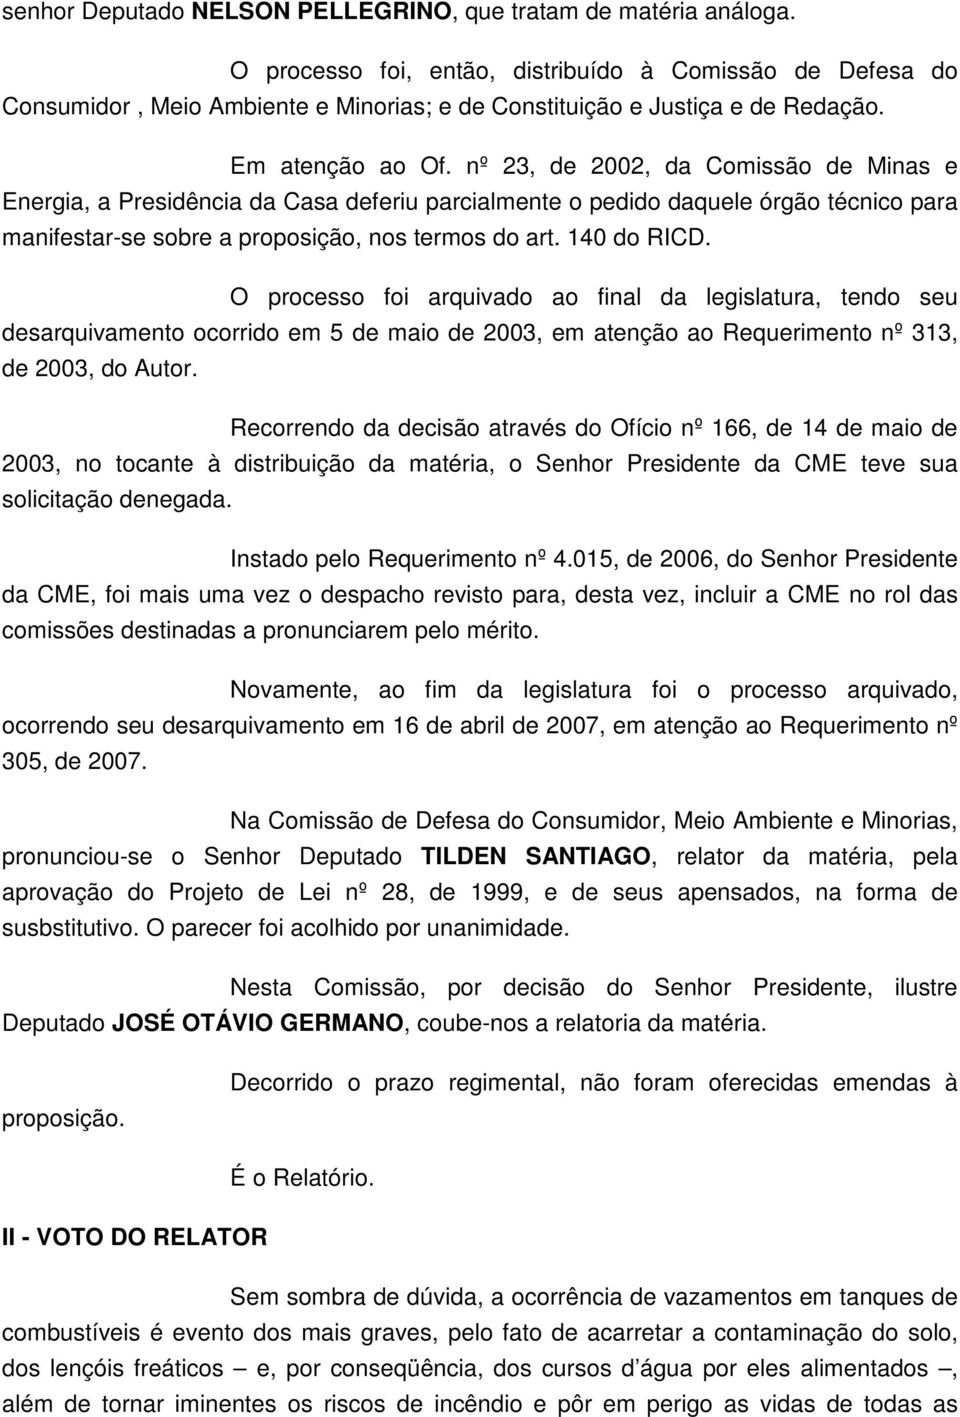 nº 23, de 2002, da Comissão de Minas e Energia, a Presidência da Casa deferiu parcialmente o pedido daquele órgão técnico para manifestar-se sobre a proposição, nos termos do art. 140 do RICD.